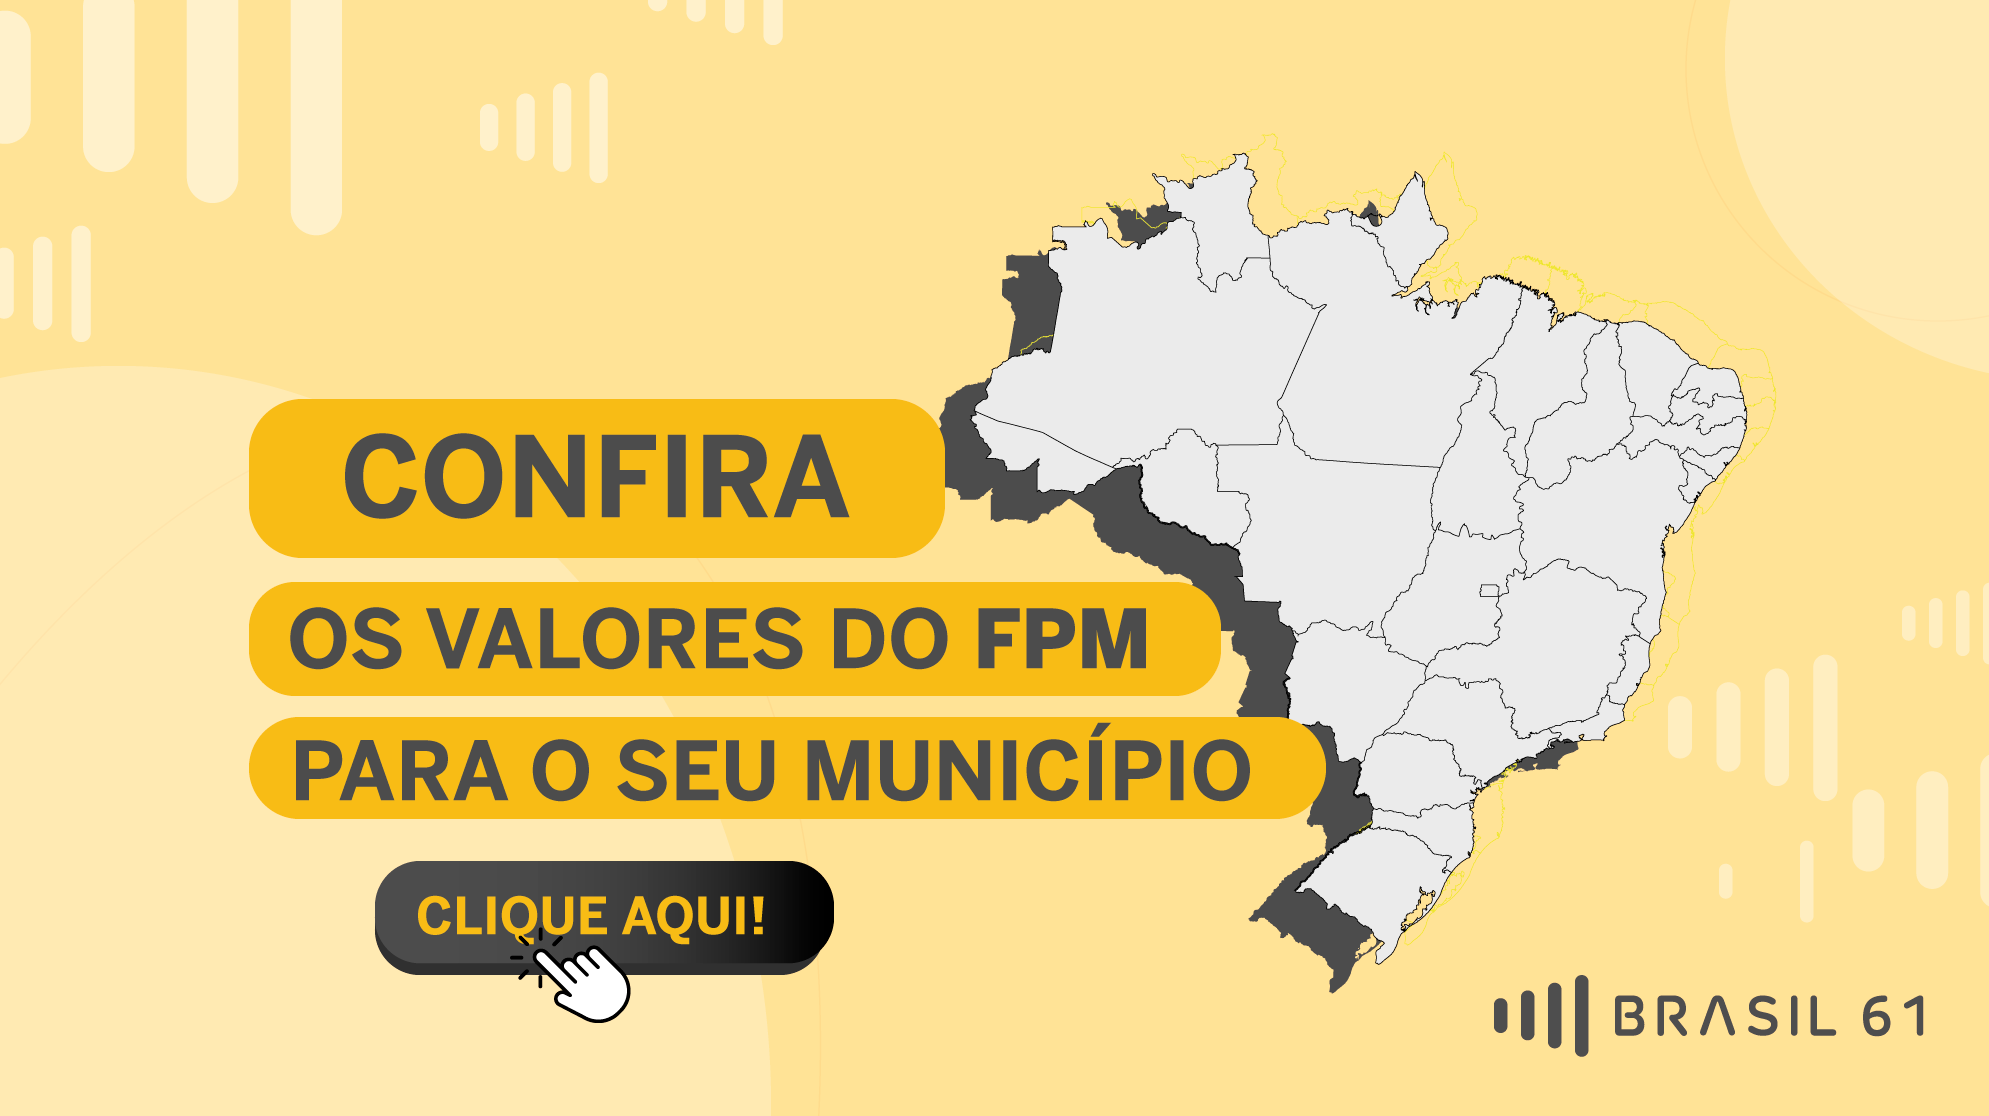 FPM municipios do Rio de Janeiro recebem nesta quarta feira 10